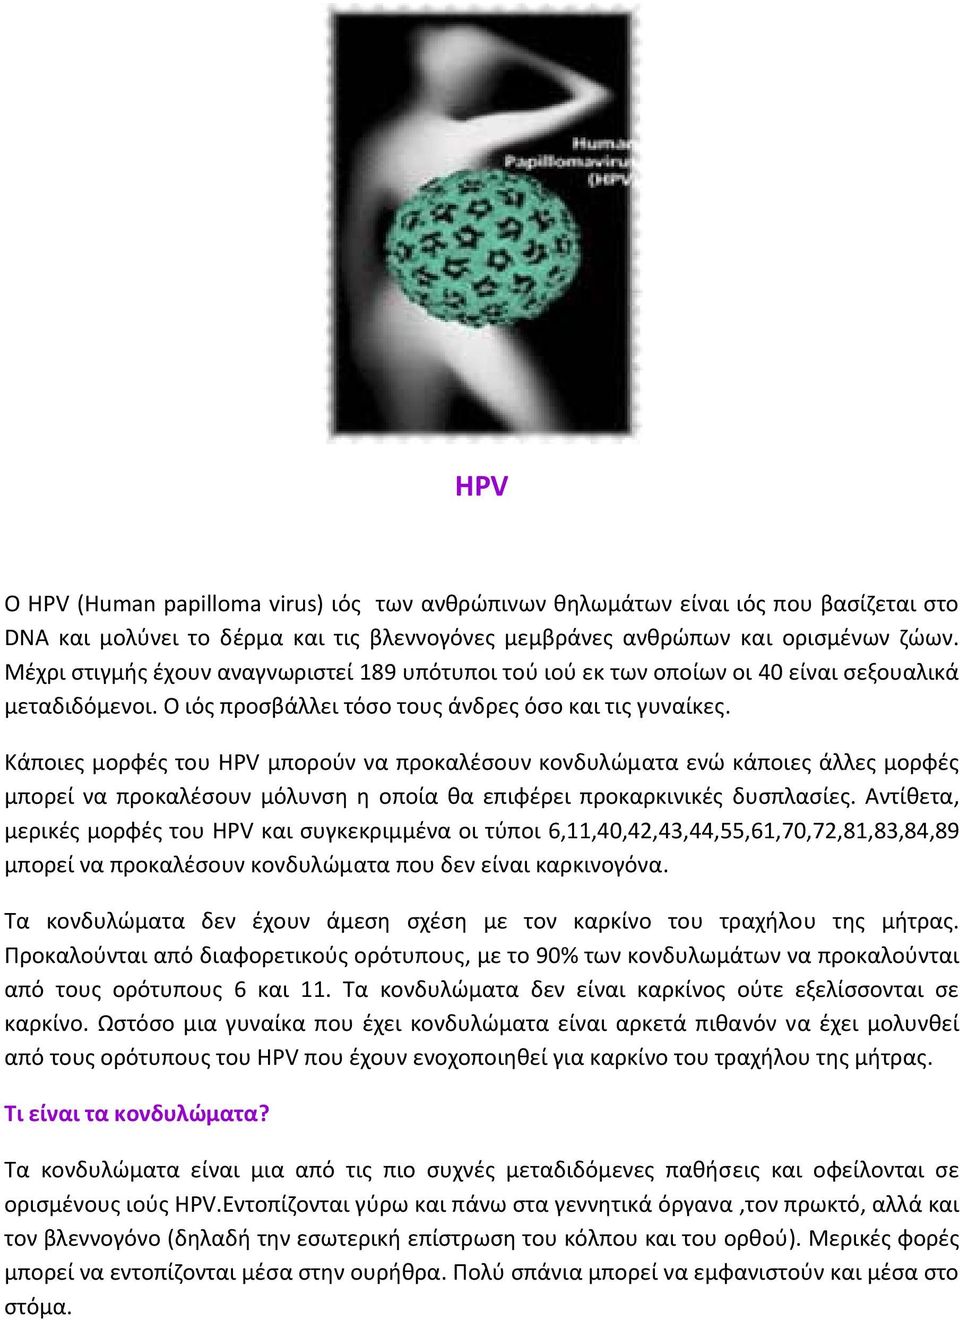 Κάποιες μορφές του HPV μπορούν να προκαλέσουν κονδυλώματα ενώ κάποιες άλλες μορφές μπορεί να προκαλέσουν μόλυνση η οποία θα επιφέρει προκαρκινικές δυσπλασίες.